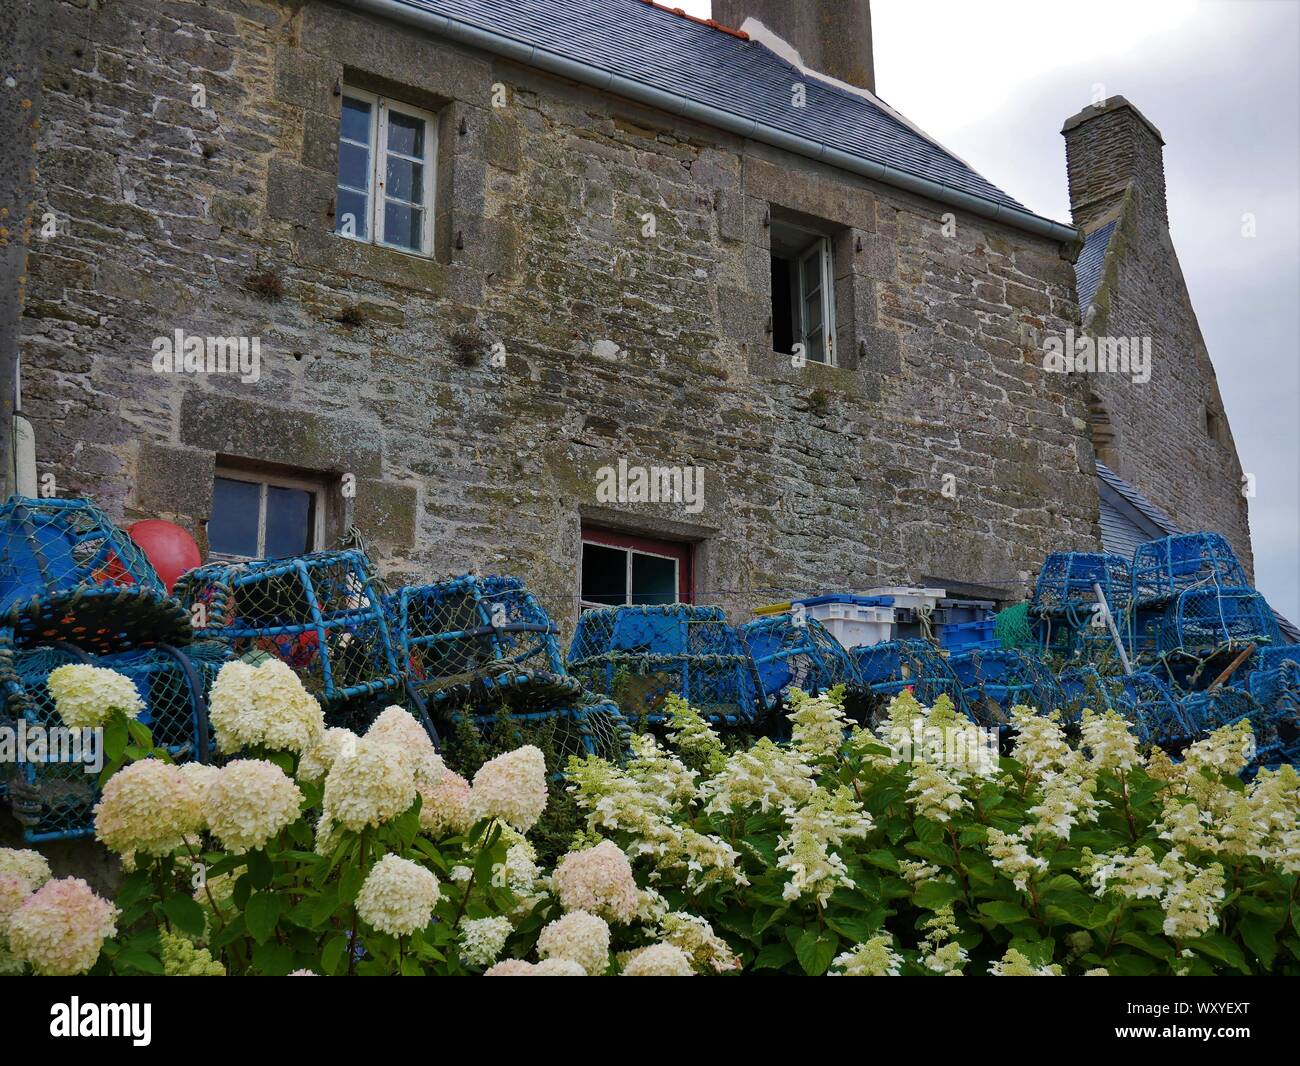 Maison bretonne Fleurie d'Hortensias avec des accessoires de Peche au crustacés, toit de Ardoise, casier De Peche, Le Conquet, Bretagne Stockfoto